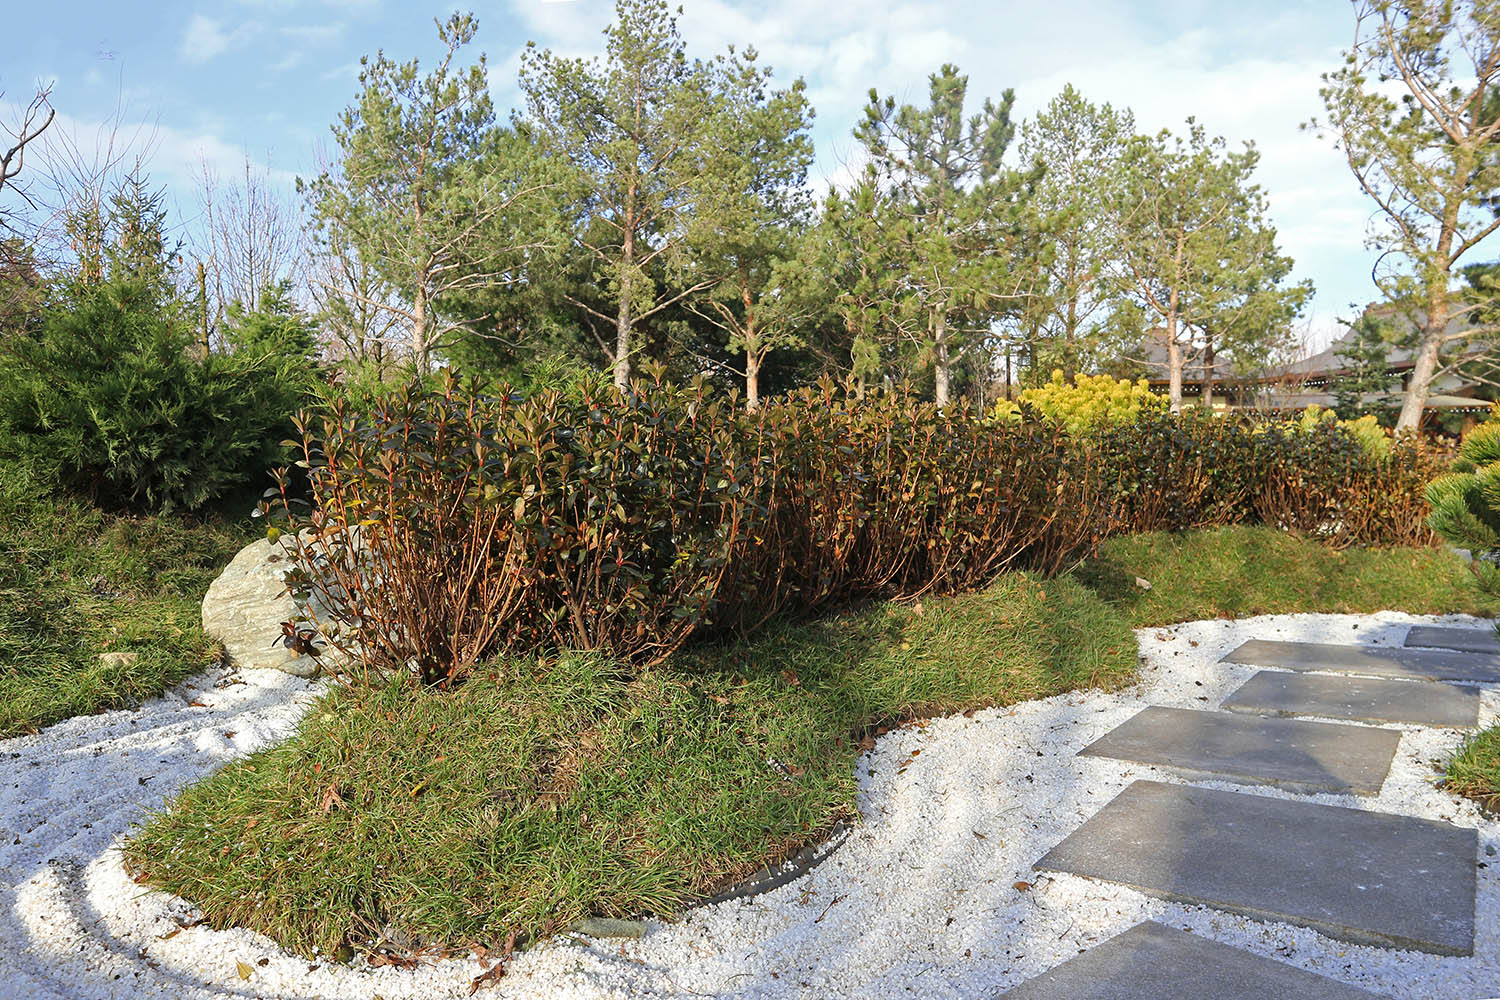 Японский сад в парке Галицкого, image of landscape/habitat.